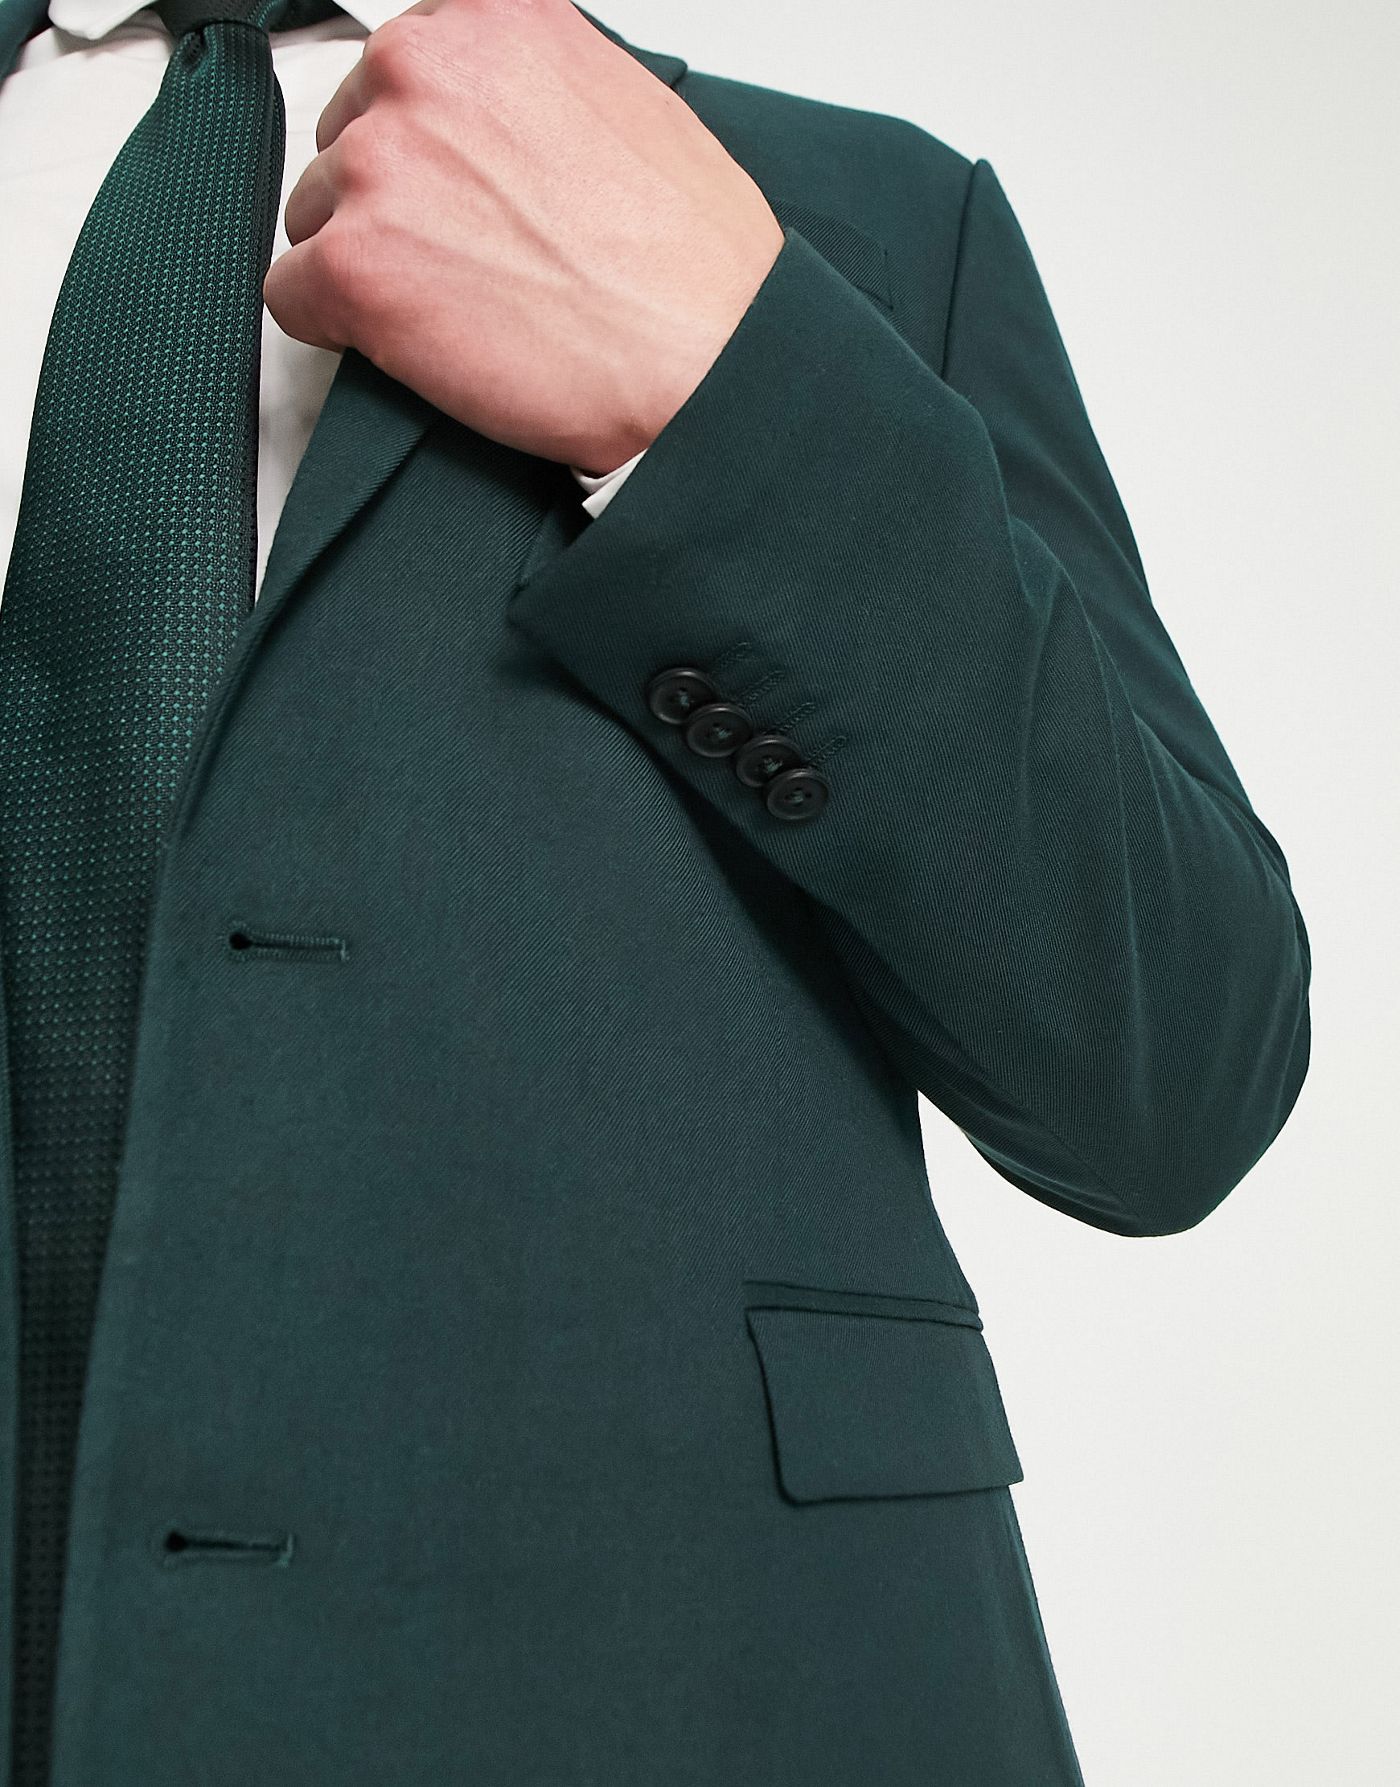 New Look skinny suit jacket in dark green